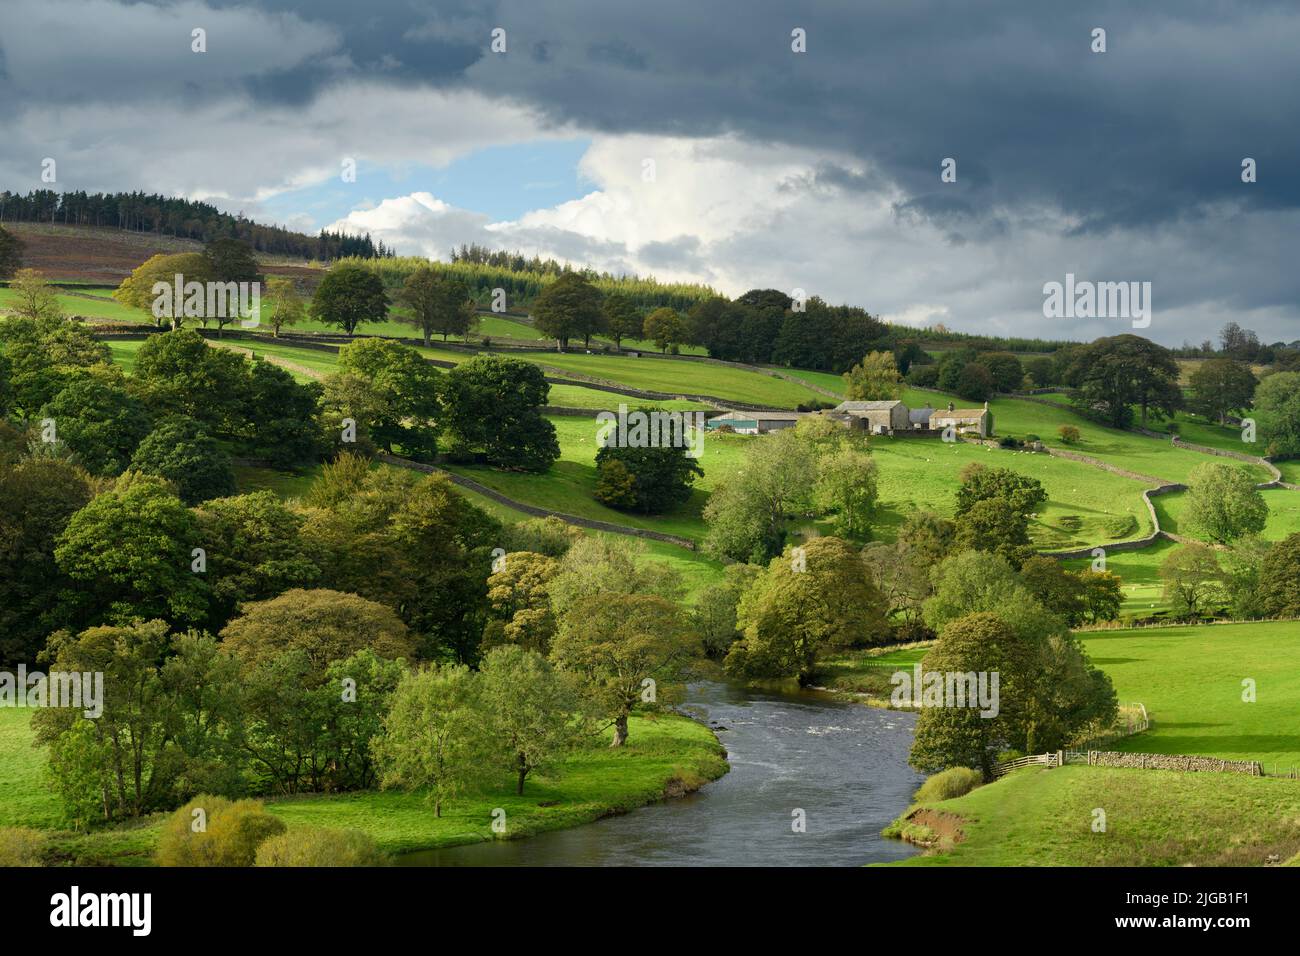 Paysage rural pittoresque de la vallée du Yorkshire Dales (rivière Wharfe, ferme traditionnelle, colline, arbres au bord de la rivière, murs en pierre) - Wharfedale, Angleterre, Royaume-Uni. Banque D'Images